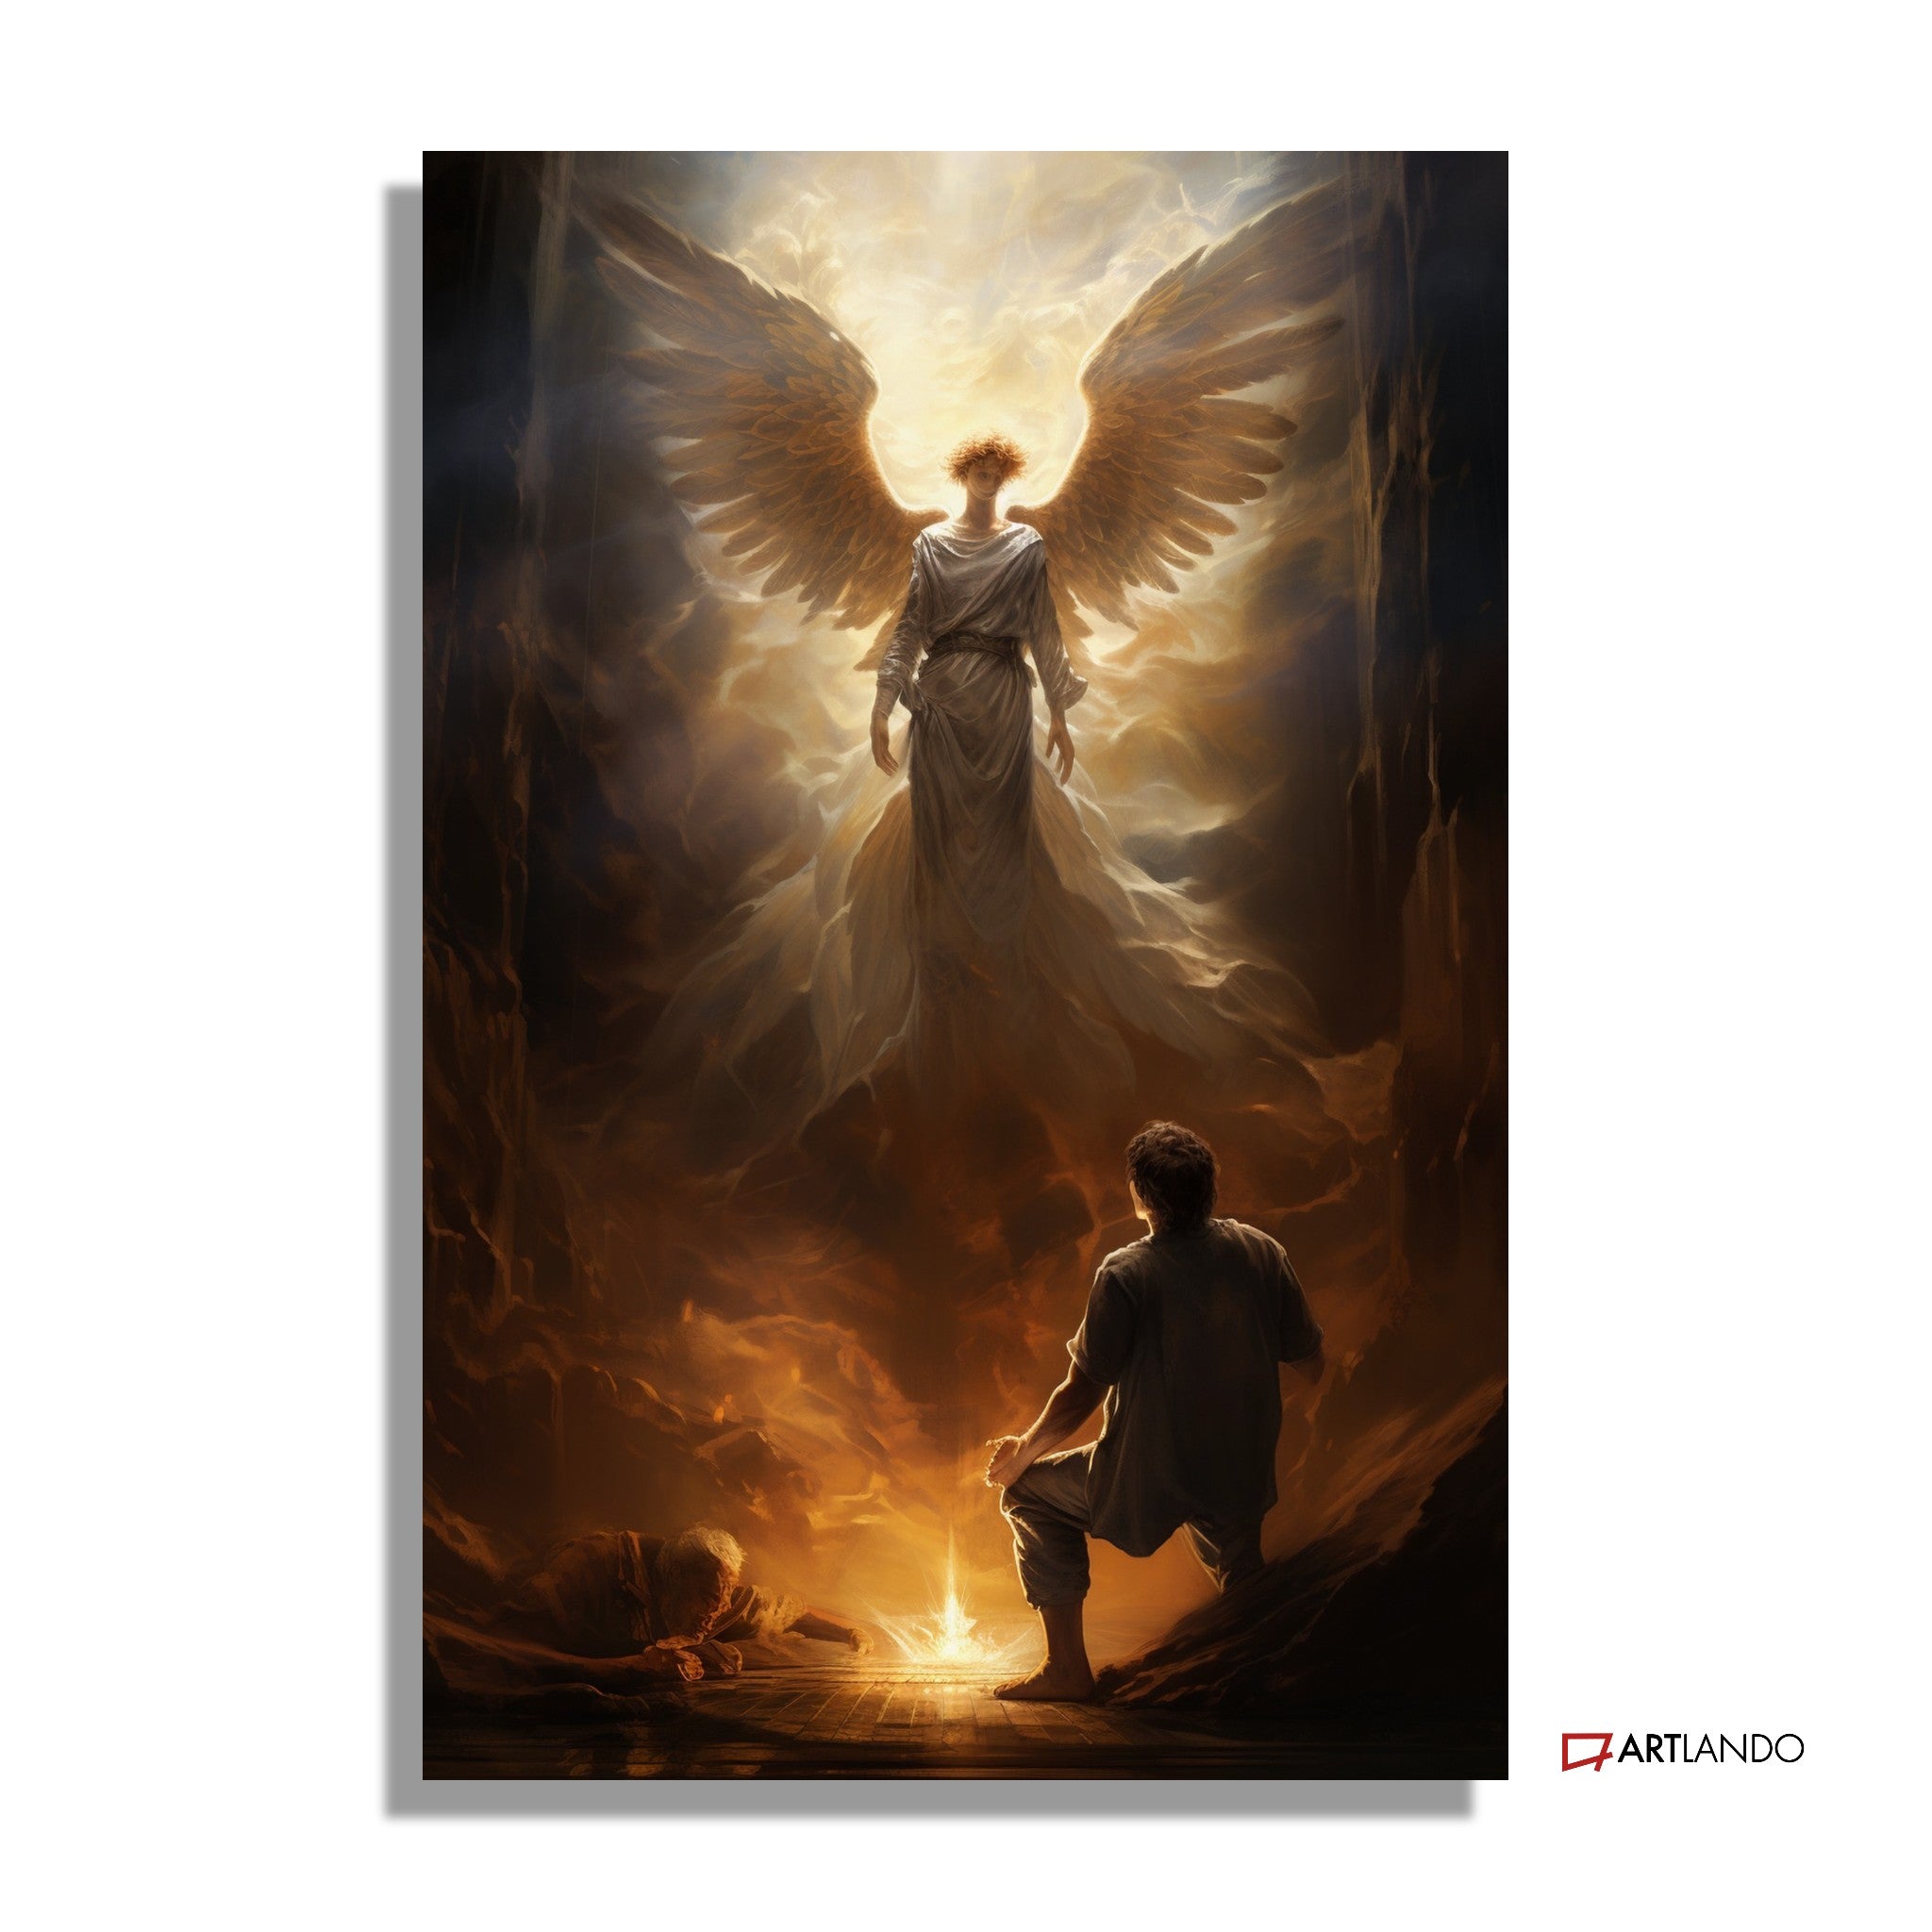 Mann kniet vor himmlischem Engel